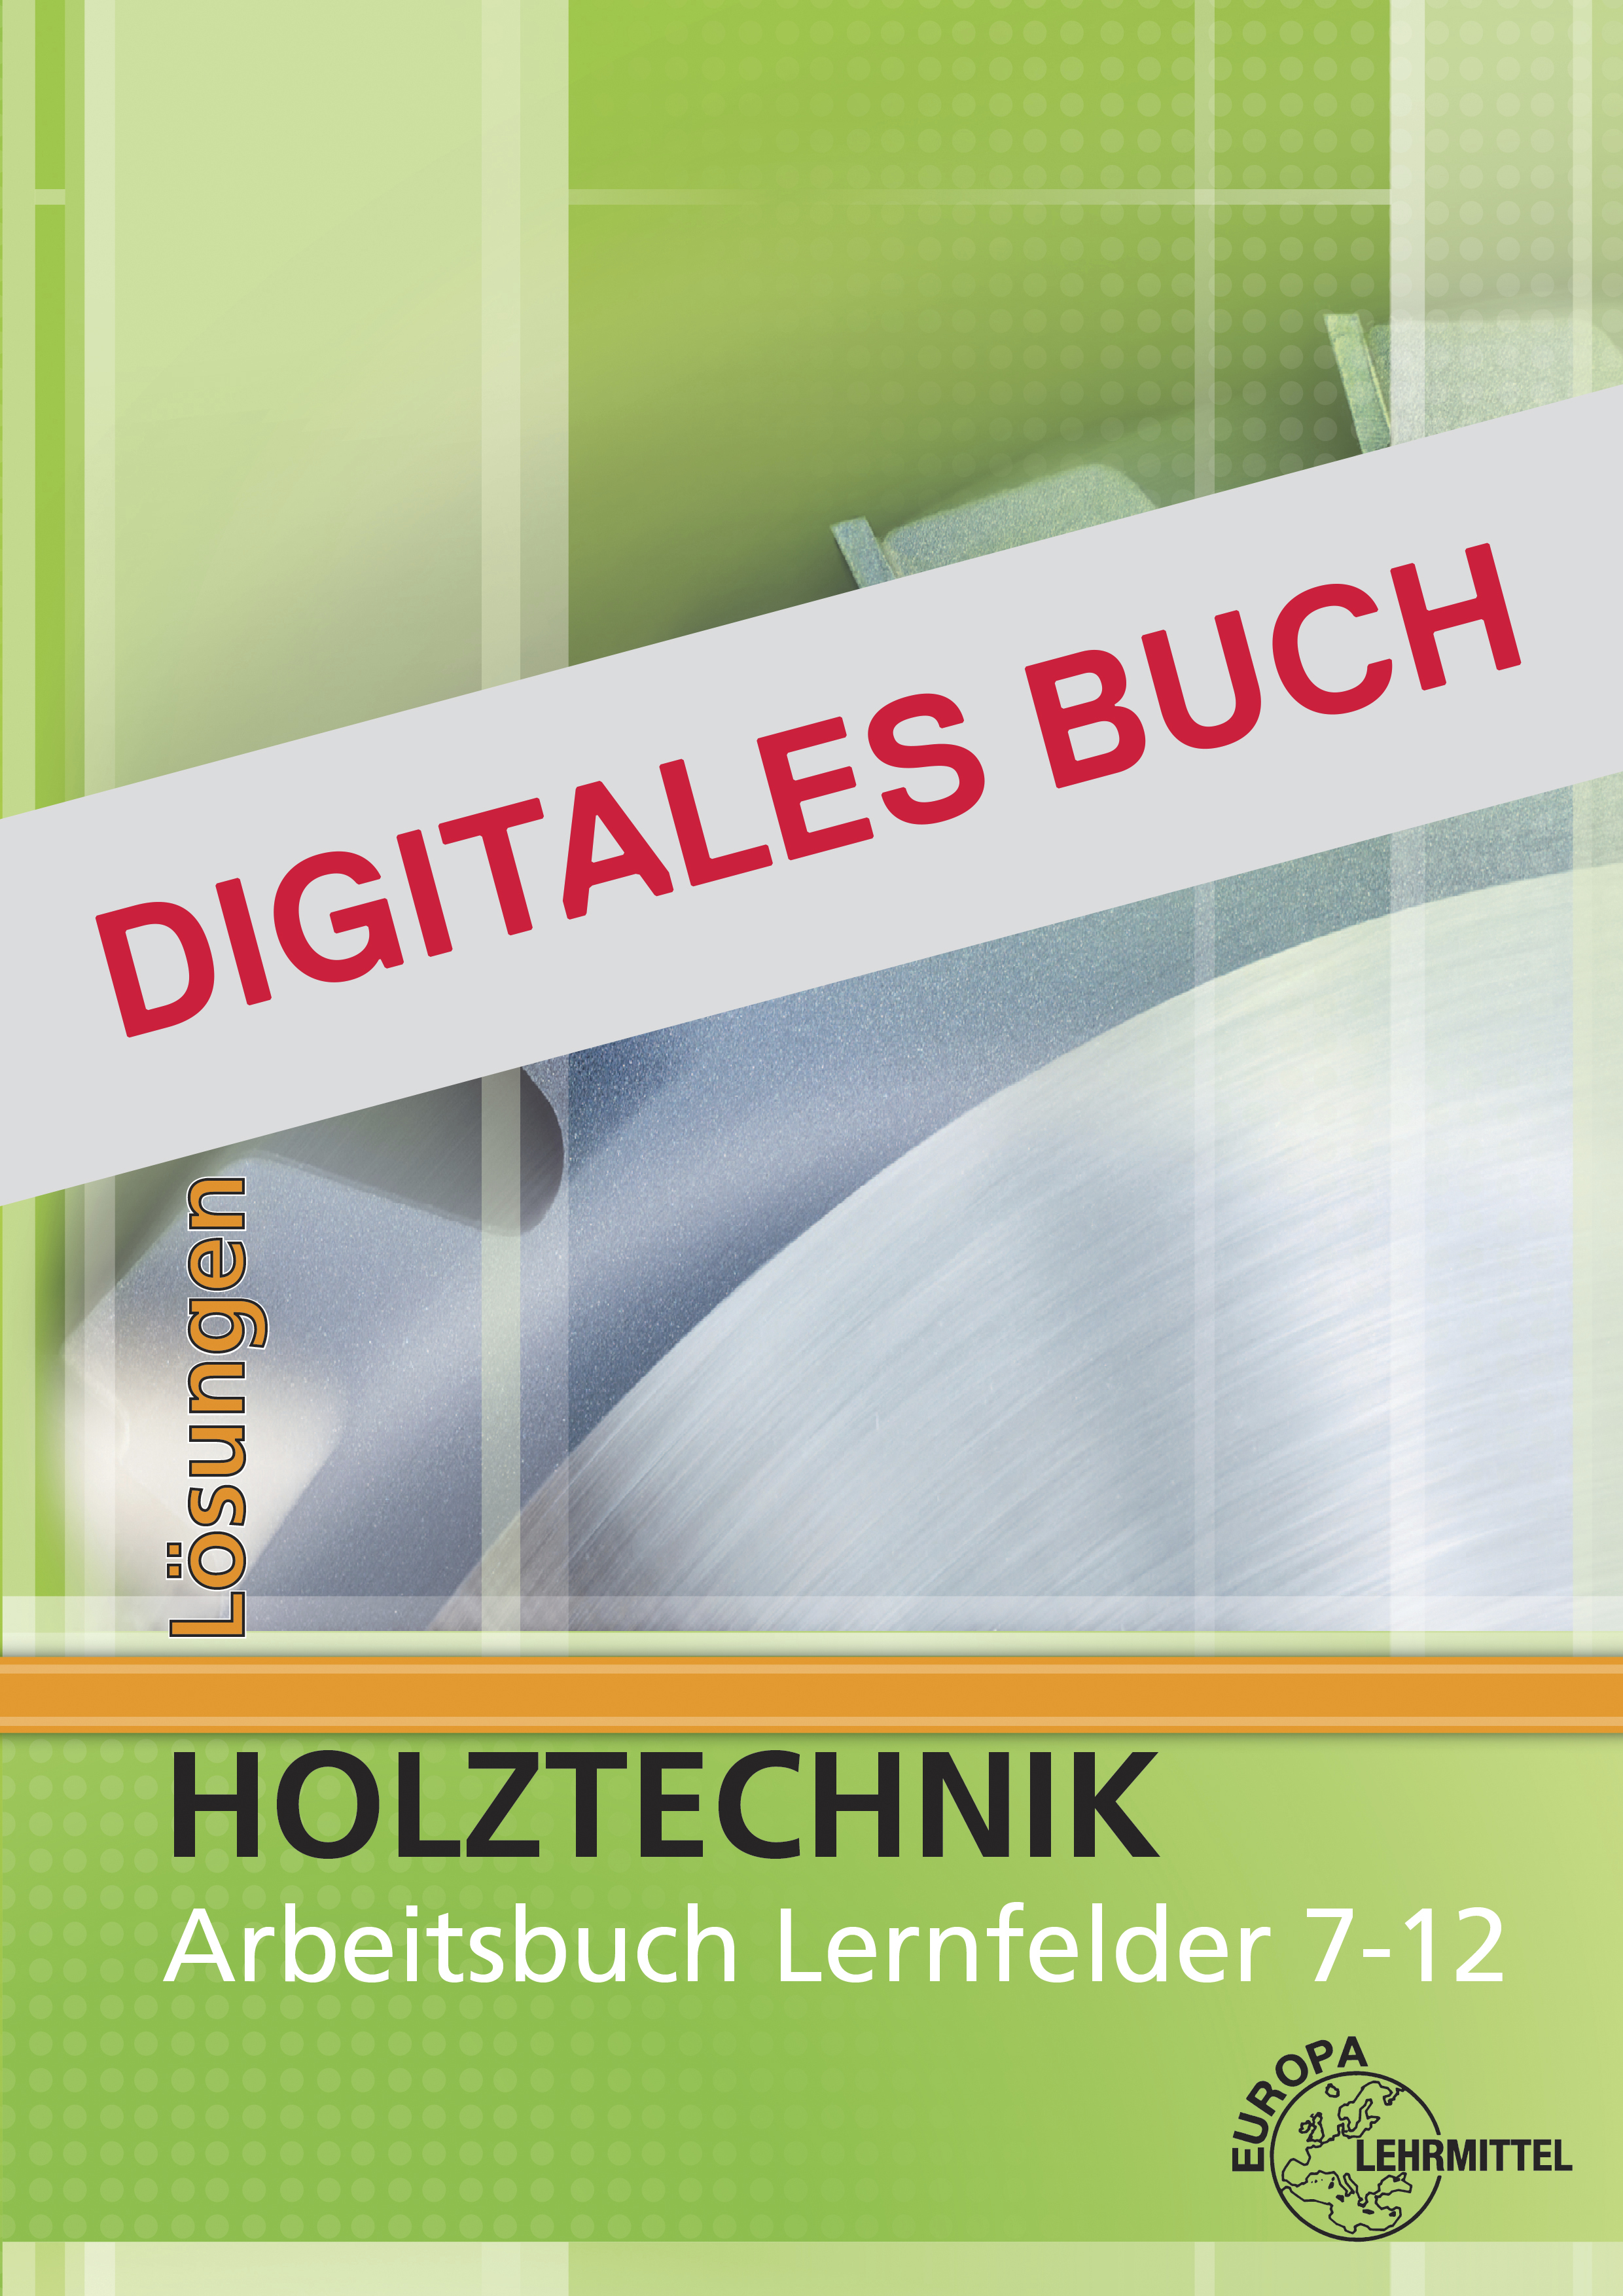 Lösungen Arbeitsbuch Holztechnik Lernfelder 7-12 - Digitales Buch